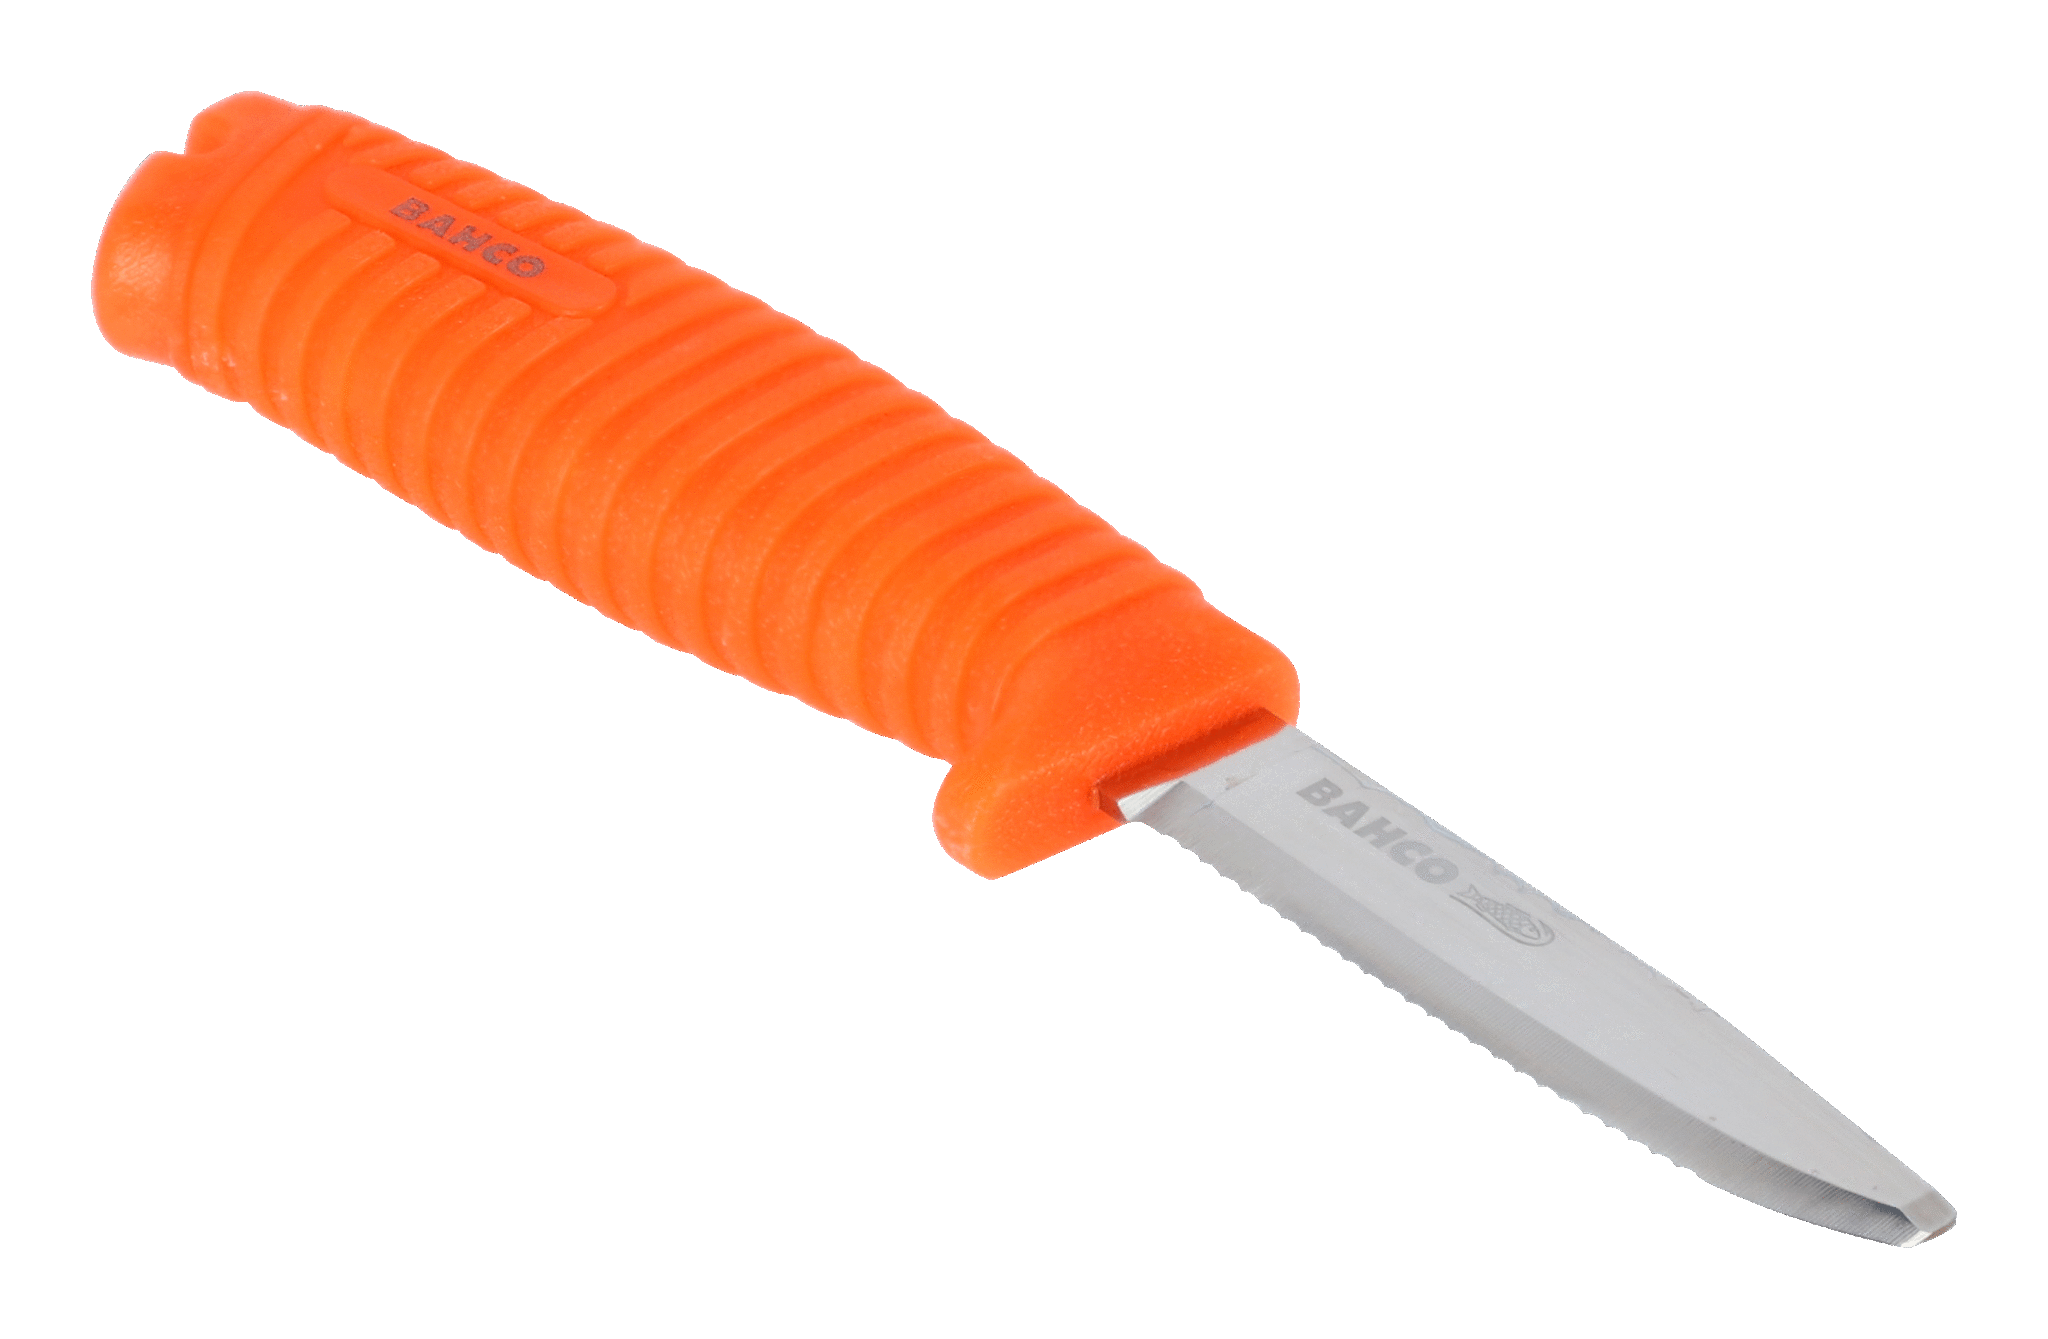 Couteau BAHCO - Avec lame en acier inoxydable